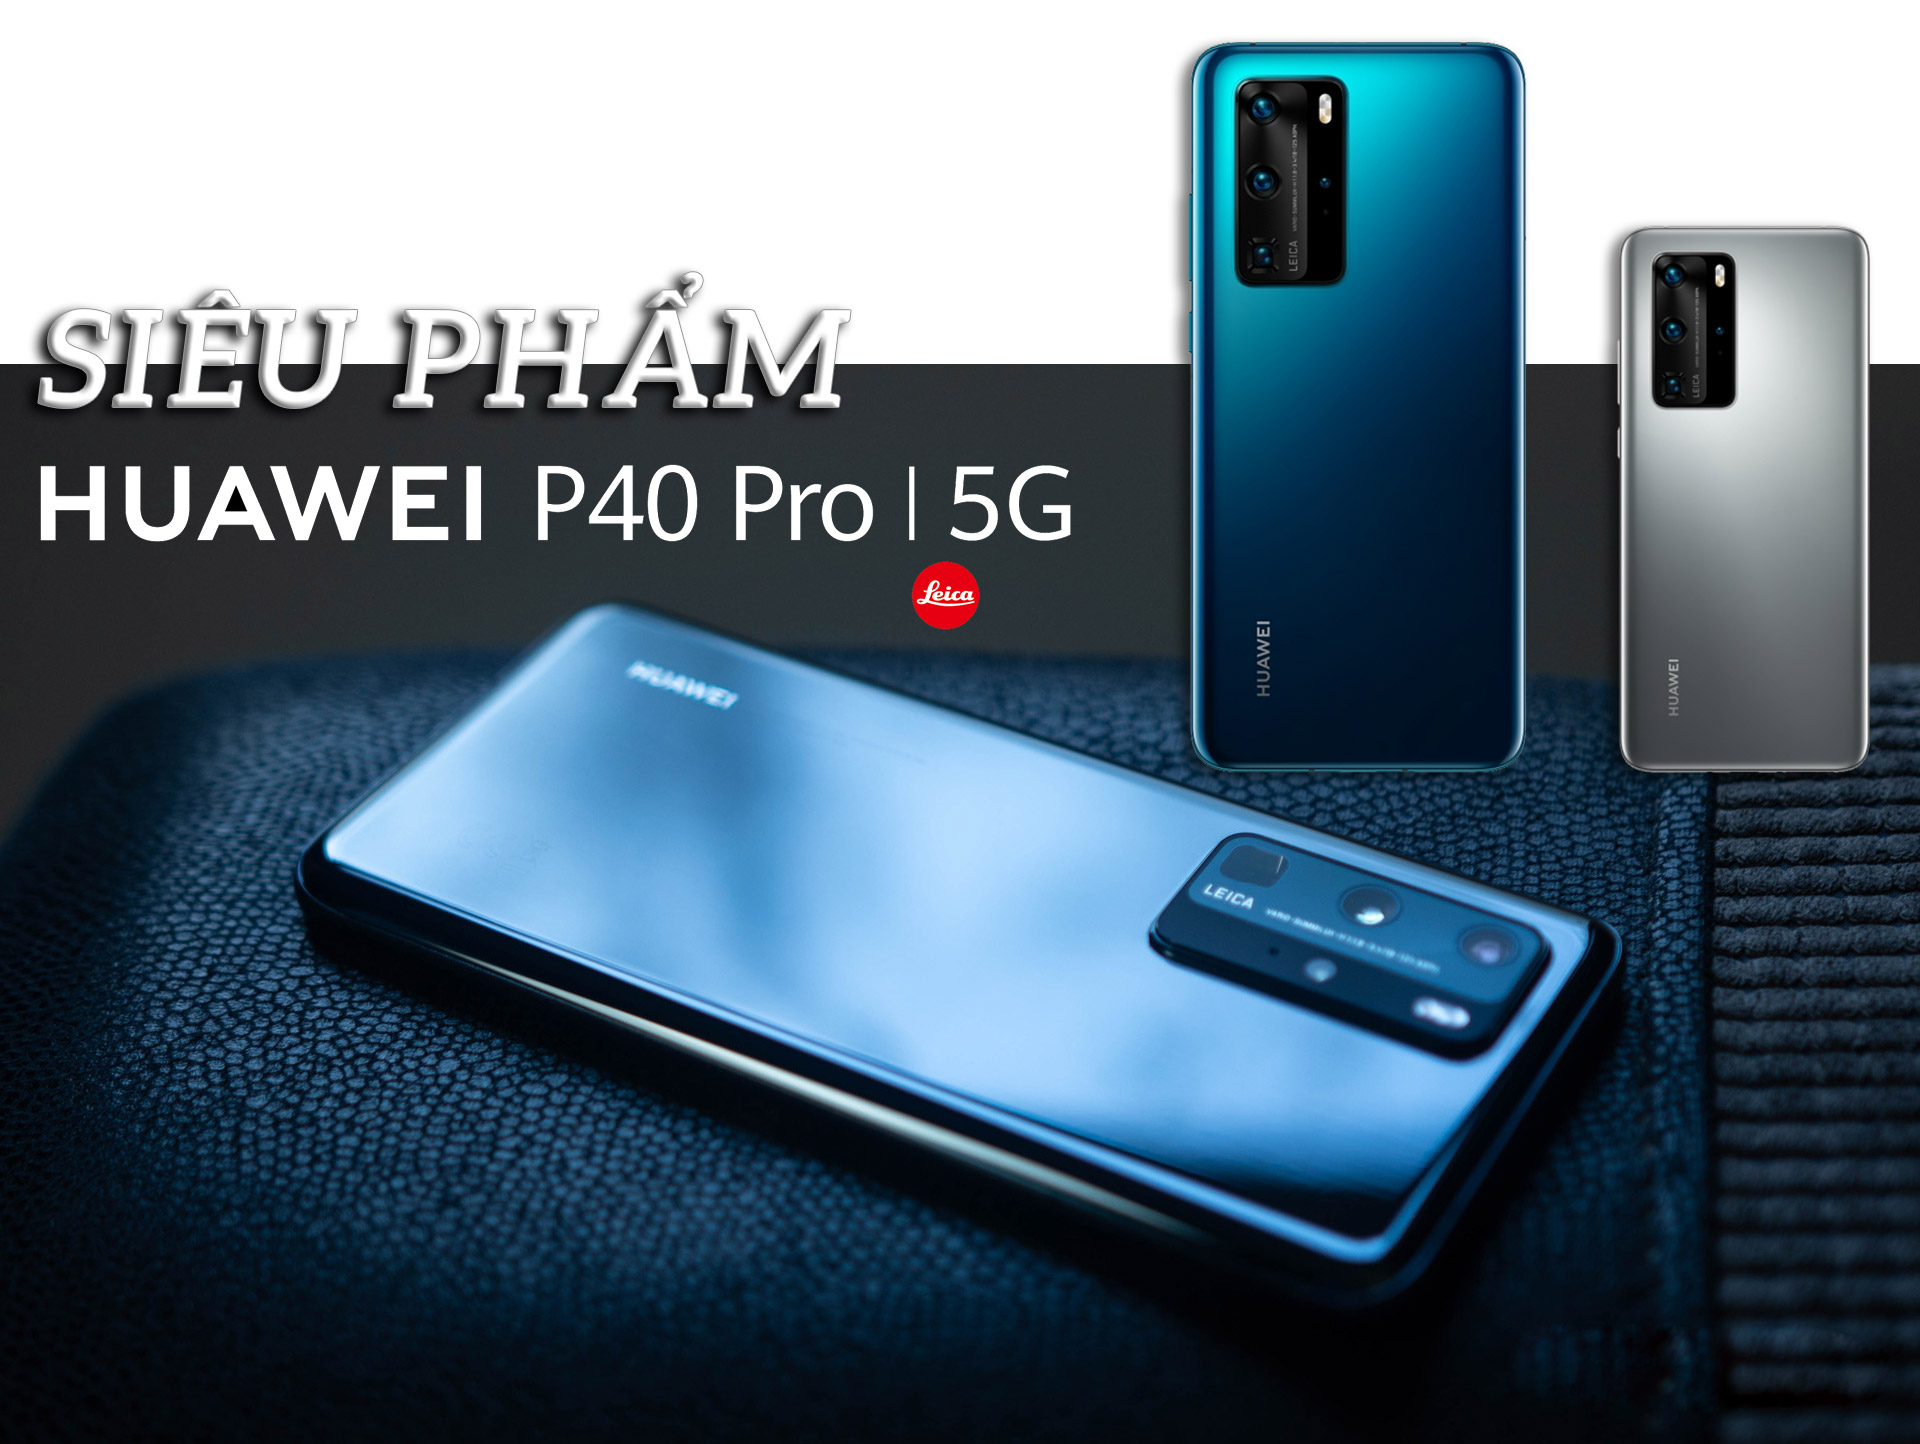 Huawei P40 Pro: Siêu phẩm camera phone đón đầu kỷ nguyên 5G - 10